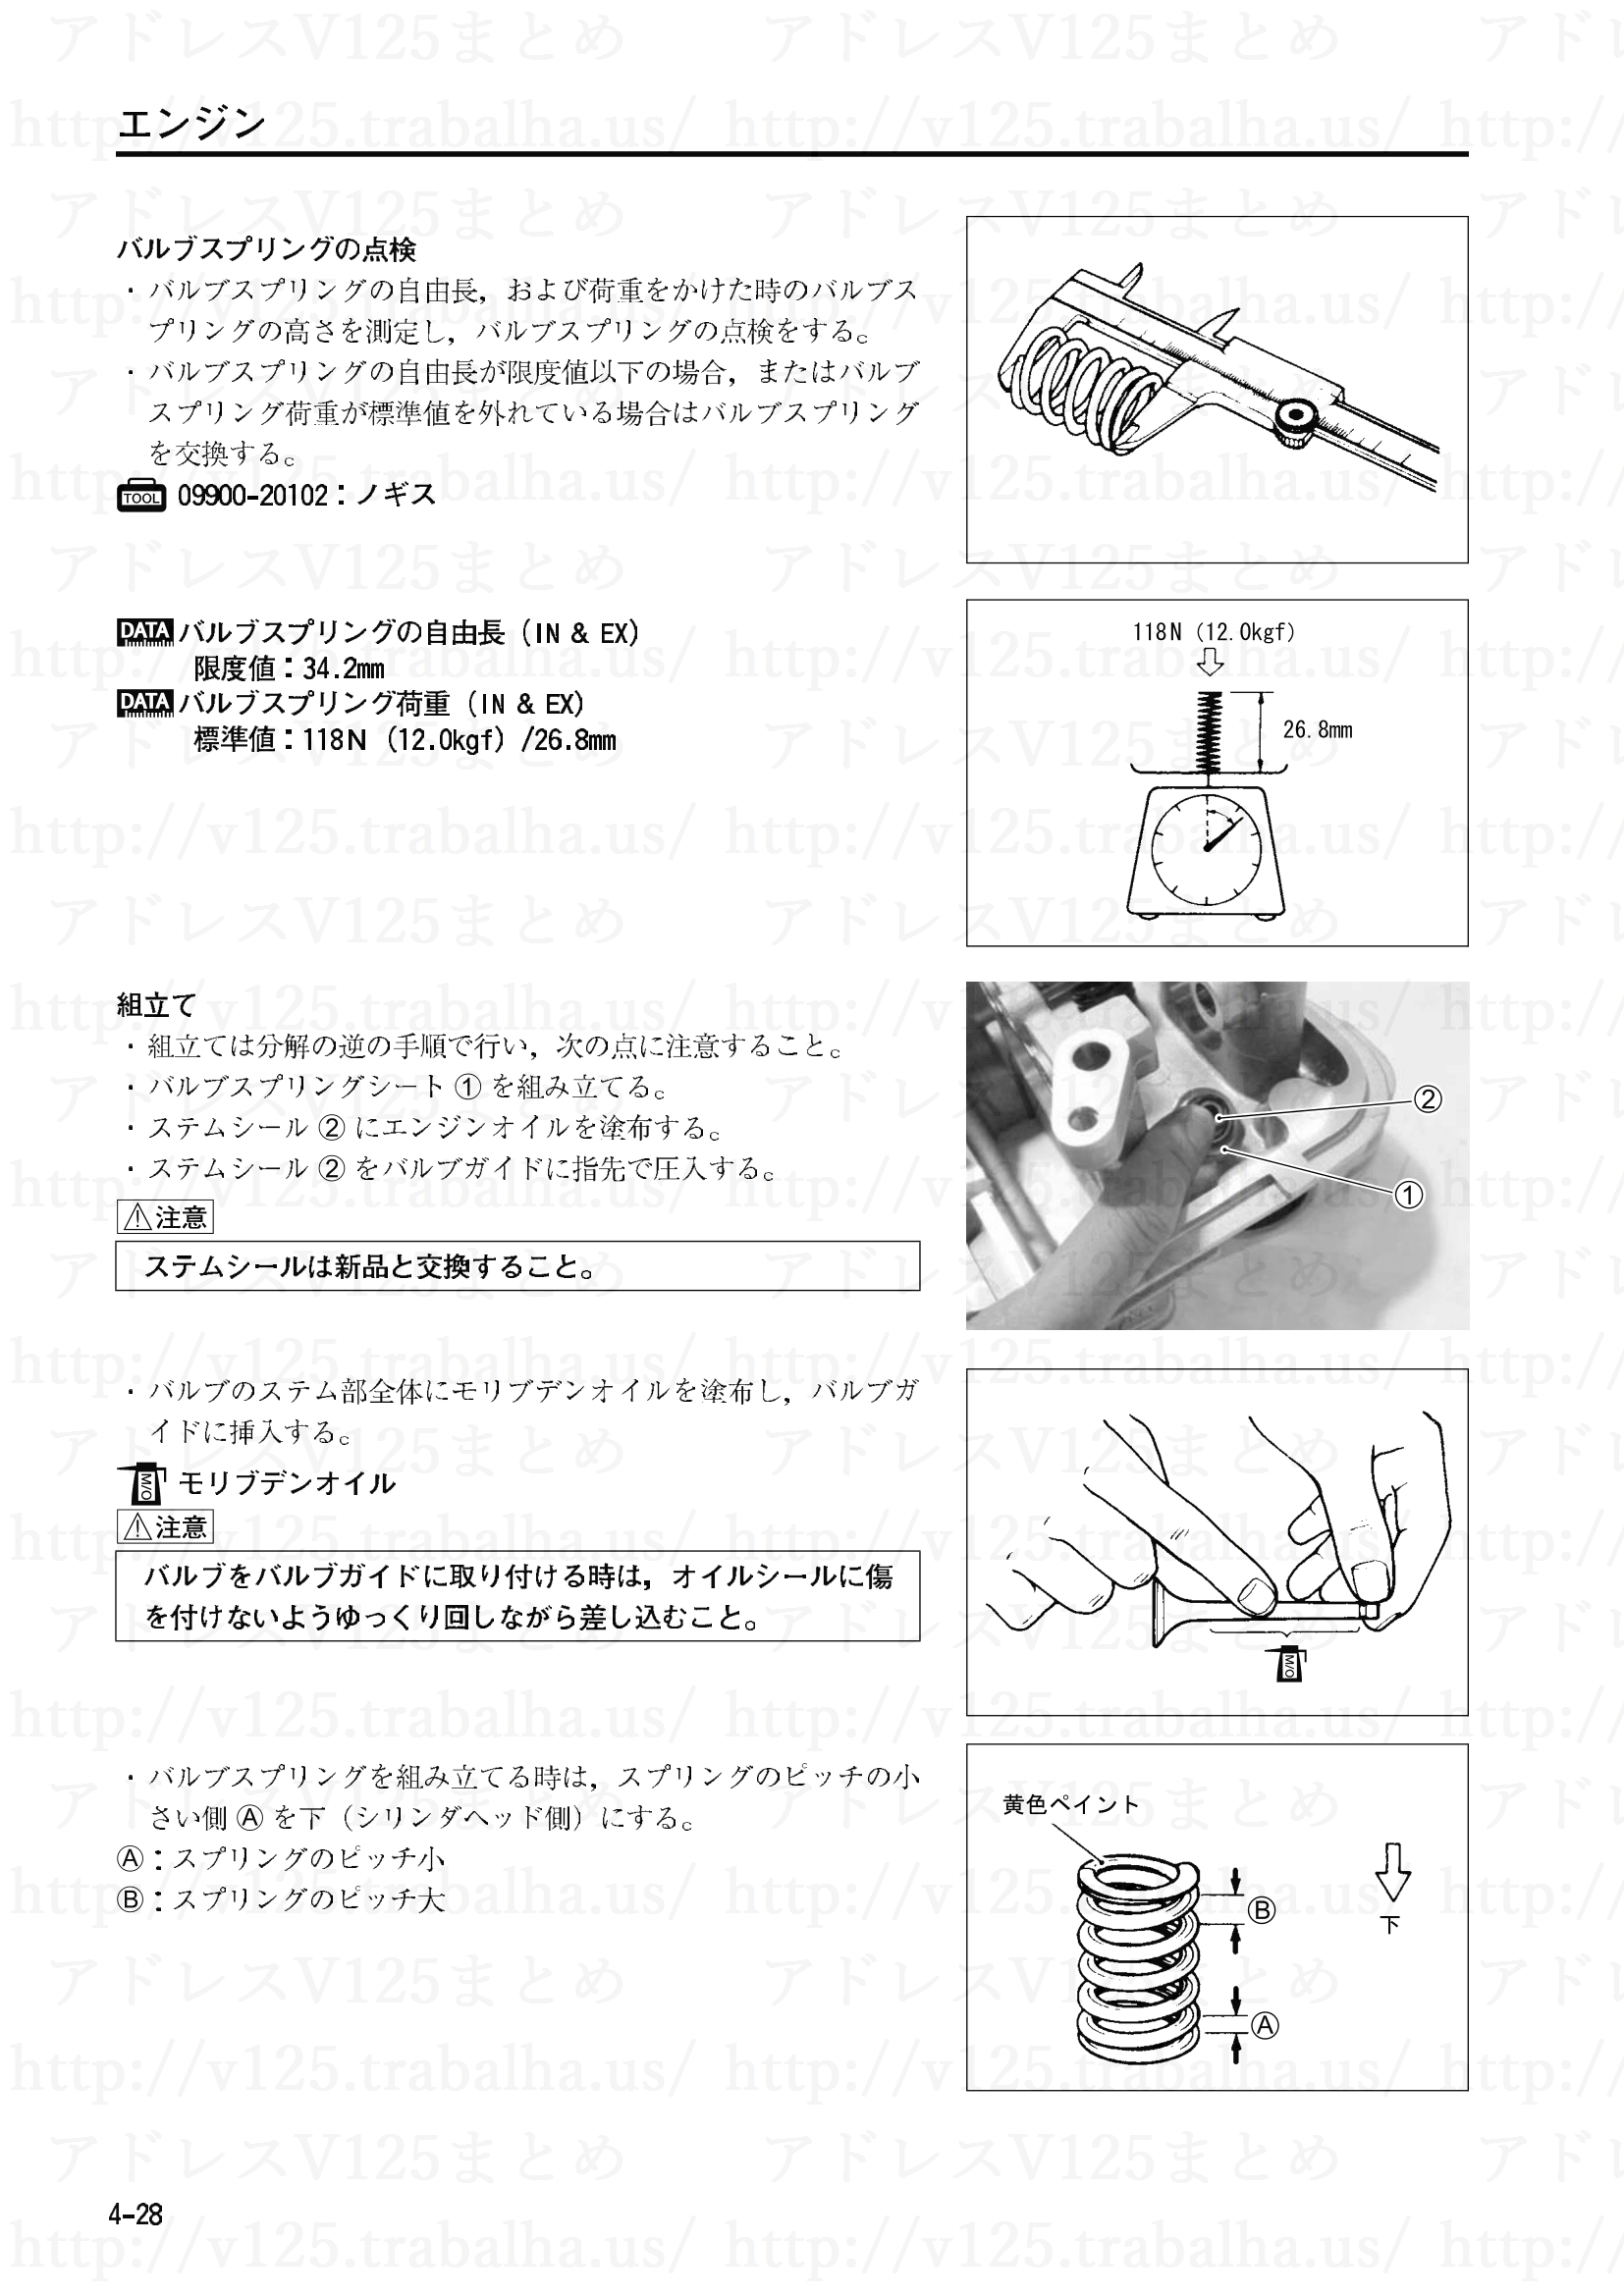 4-28【エンジン】エンジン部組部品の点検6